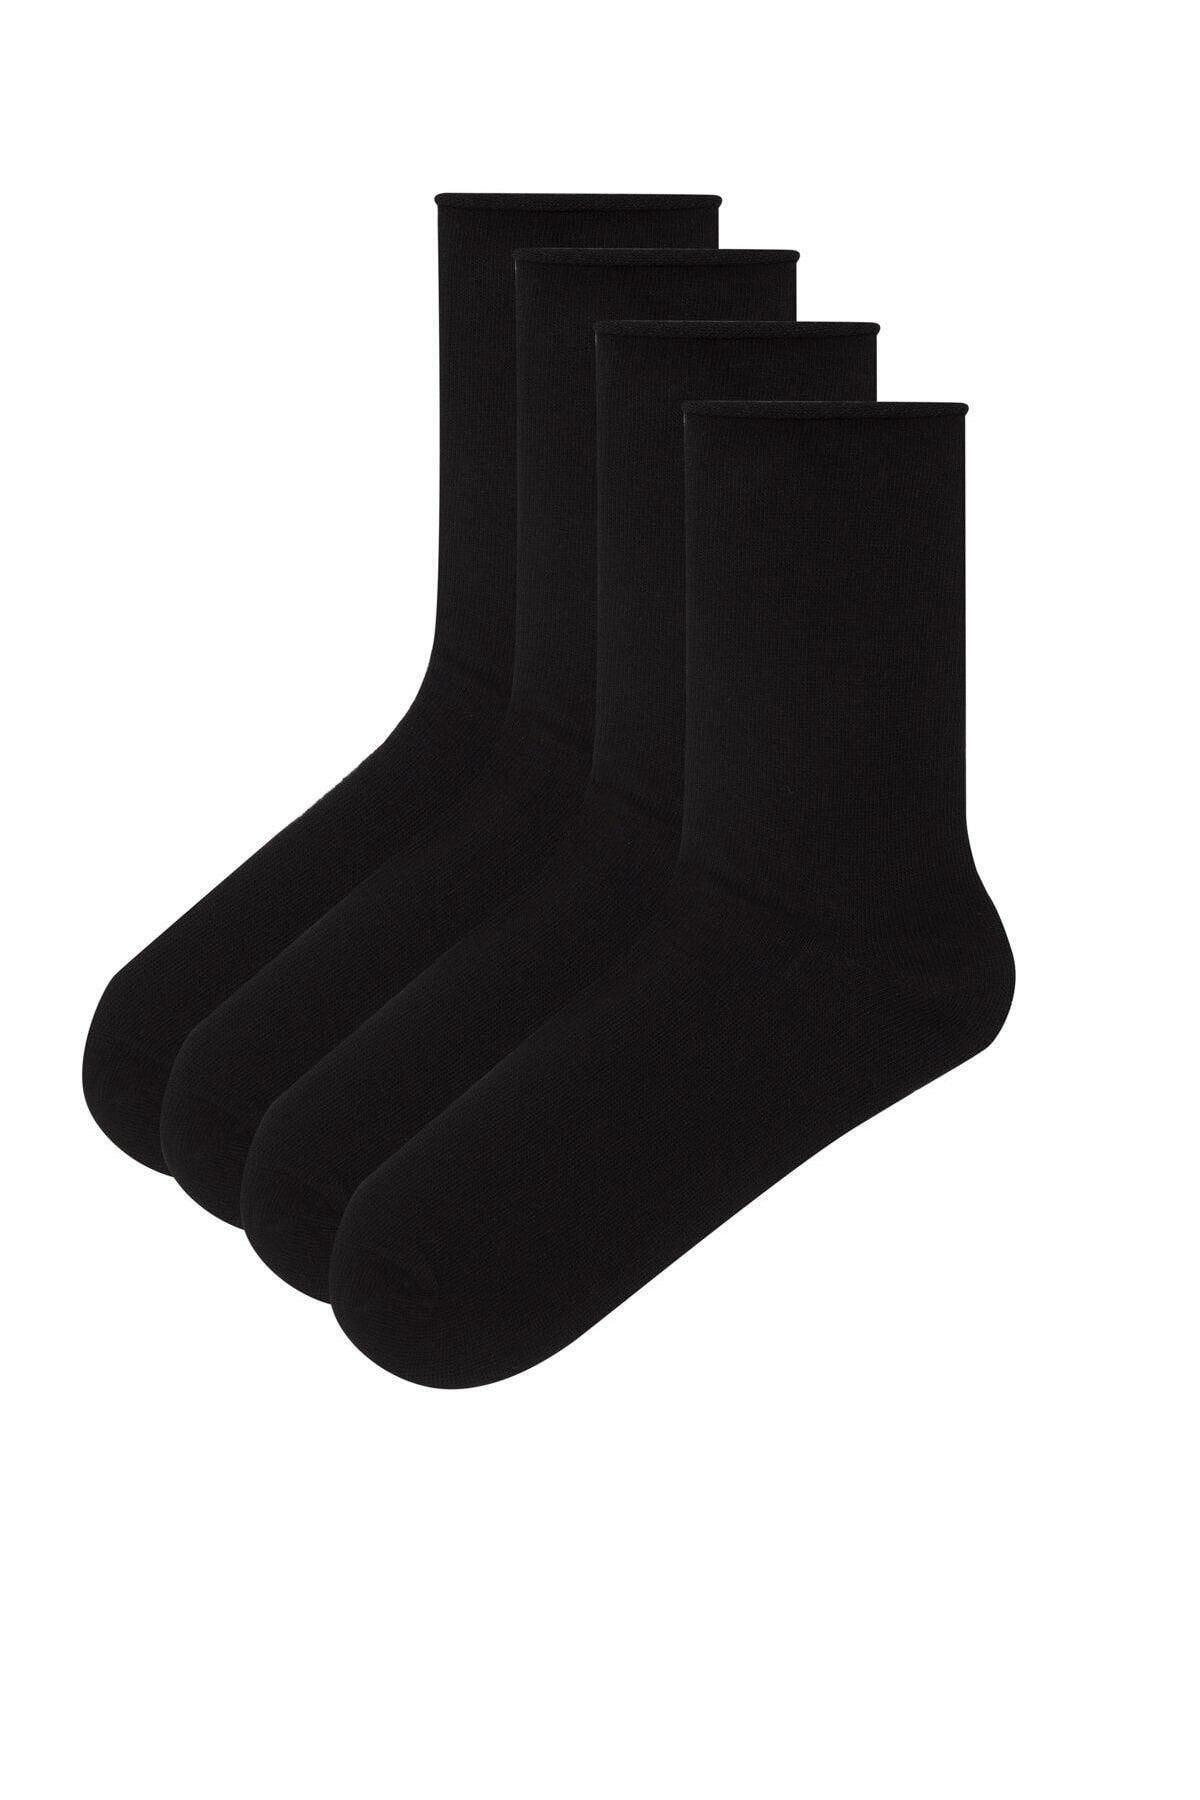 Penti Simple 4'lü Soket Çorap